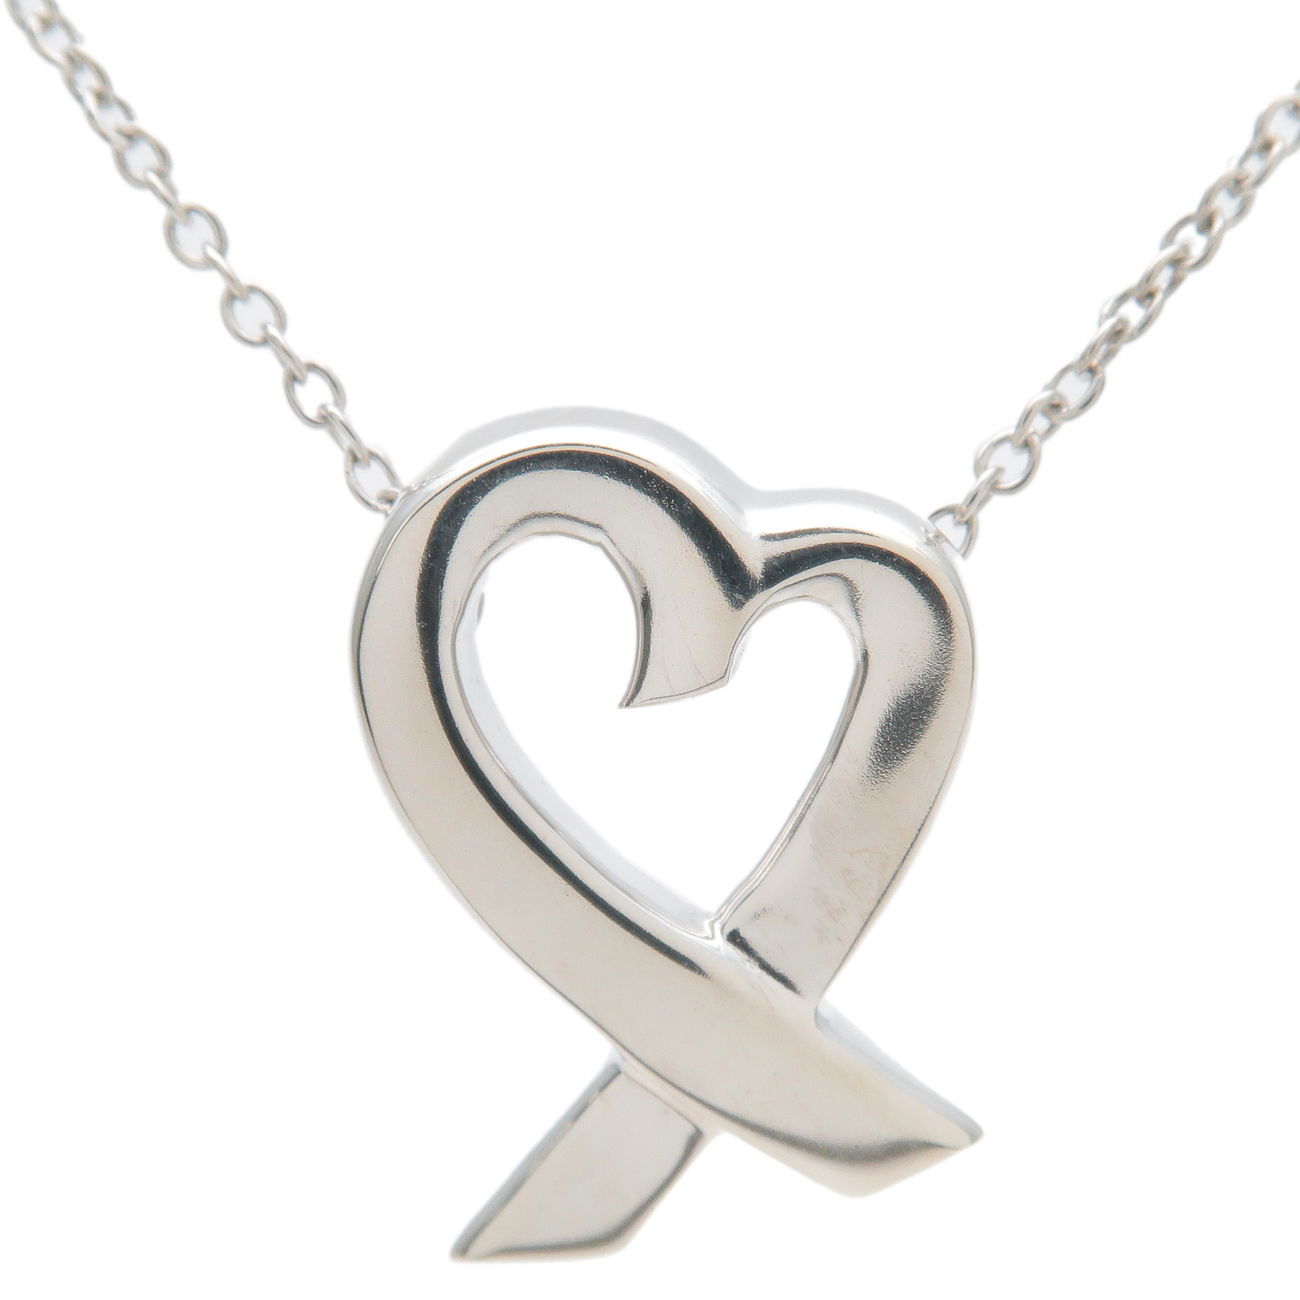 Tiffany&Co.-Rubbing-Heart-Pendant-Necklace-SV925-Silver